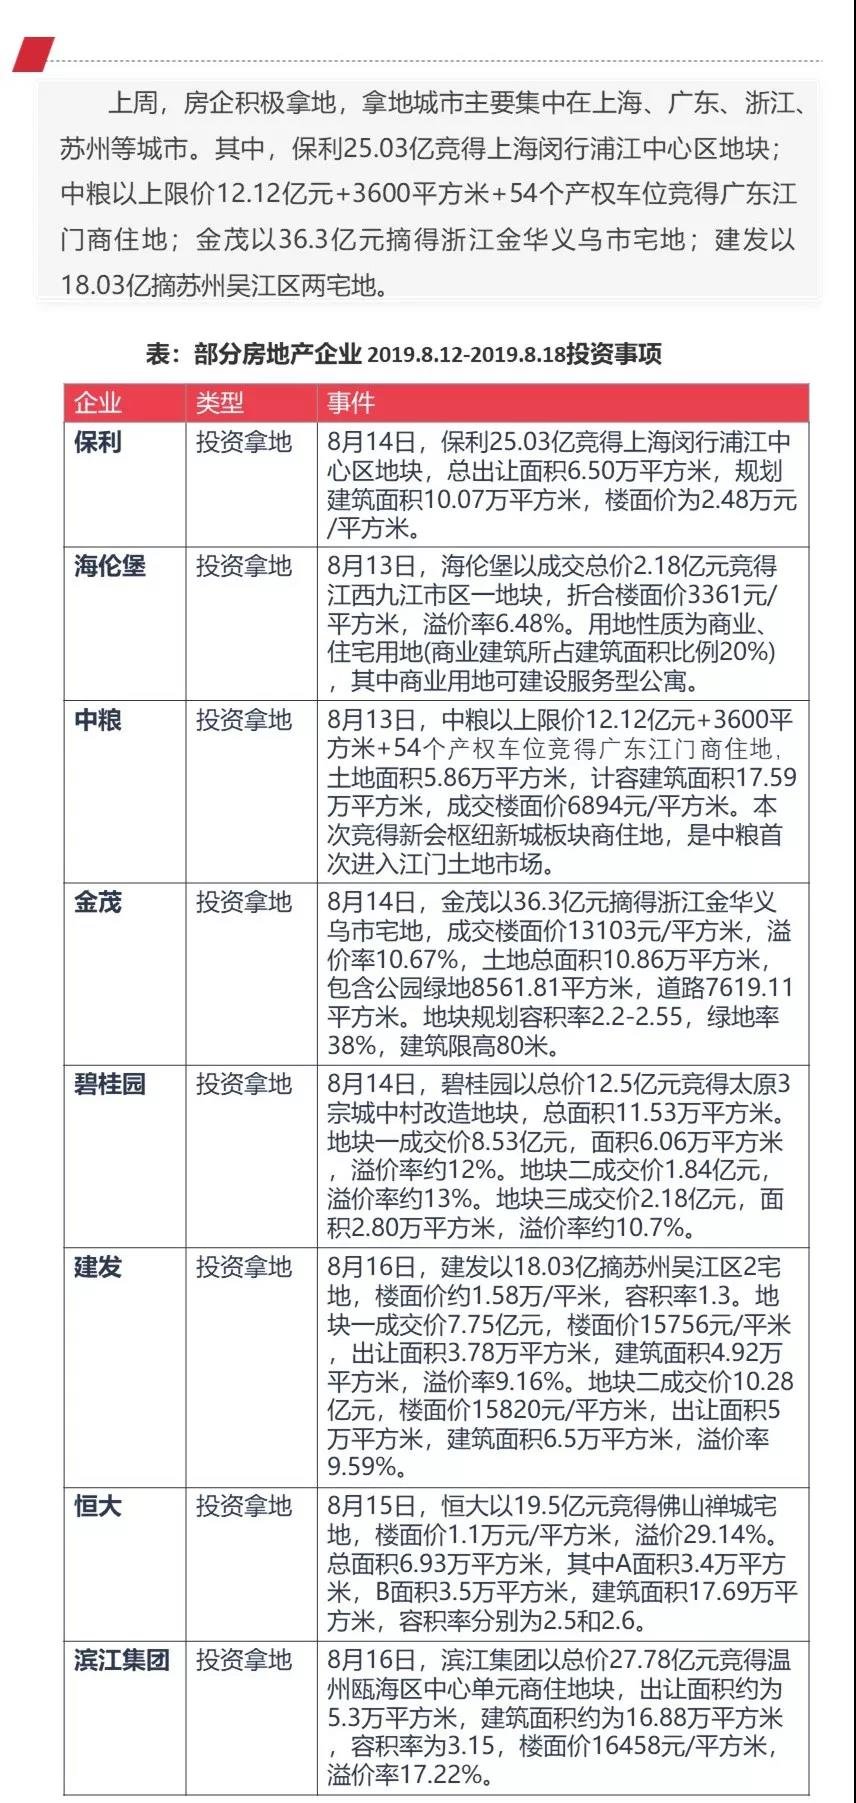 企业 | 联发集团发行30亿公司债券 保利25.03亿竞上海地块